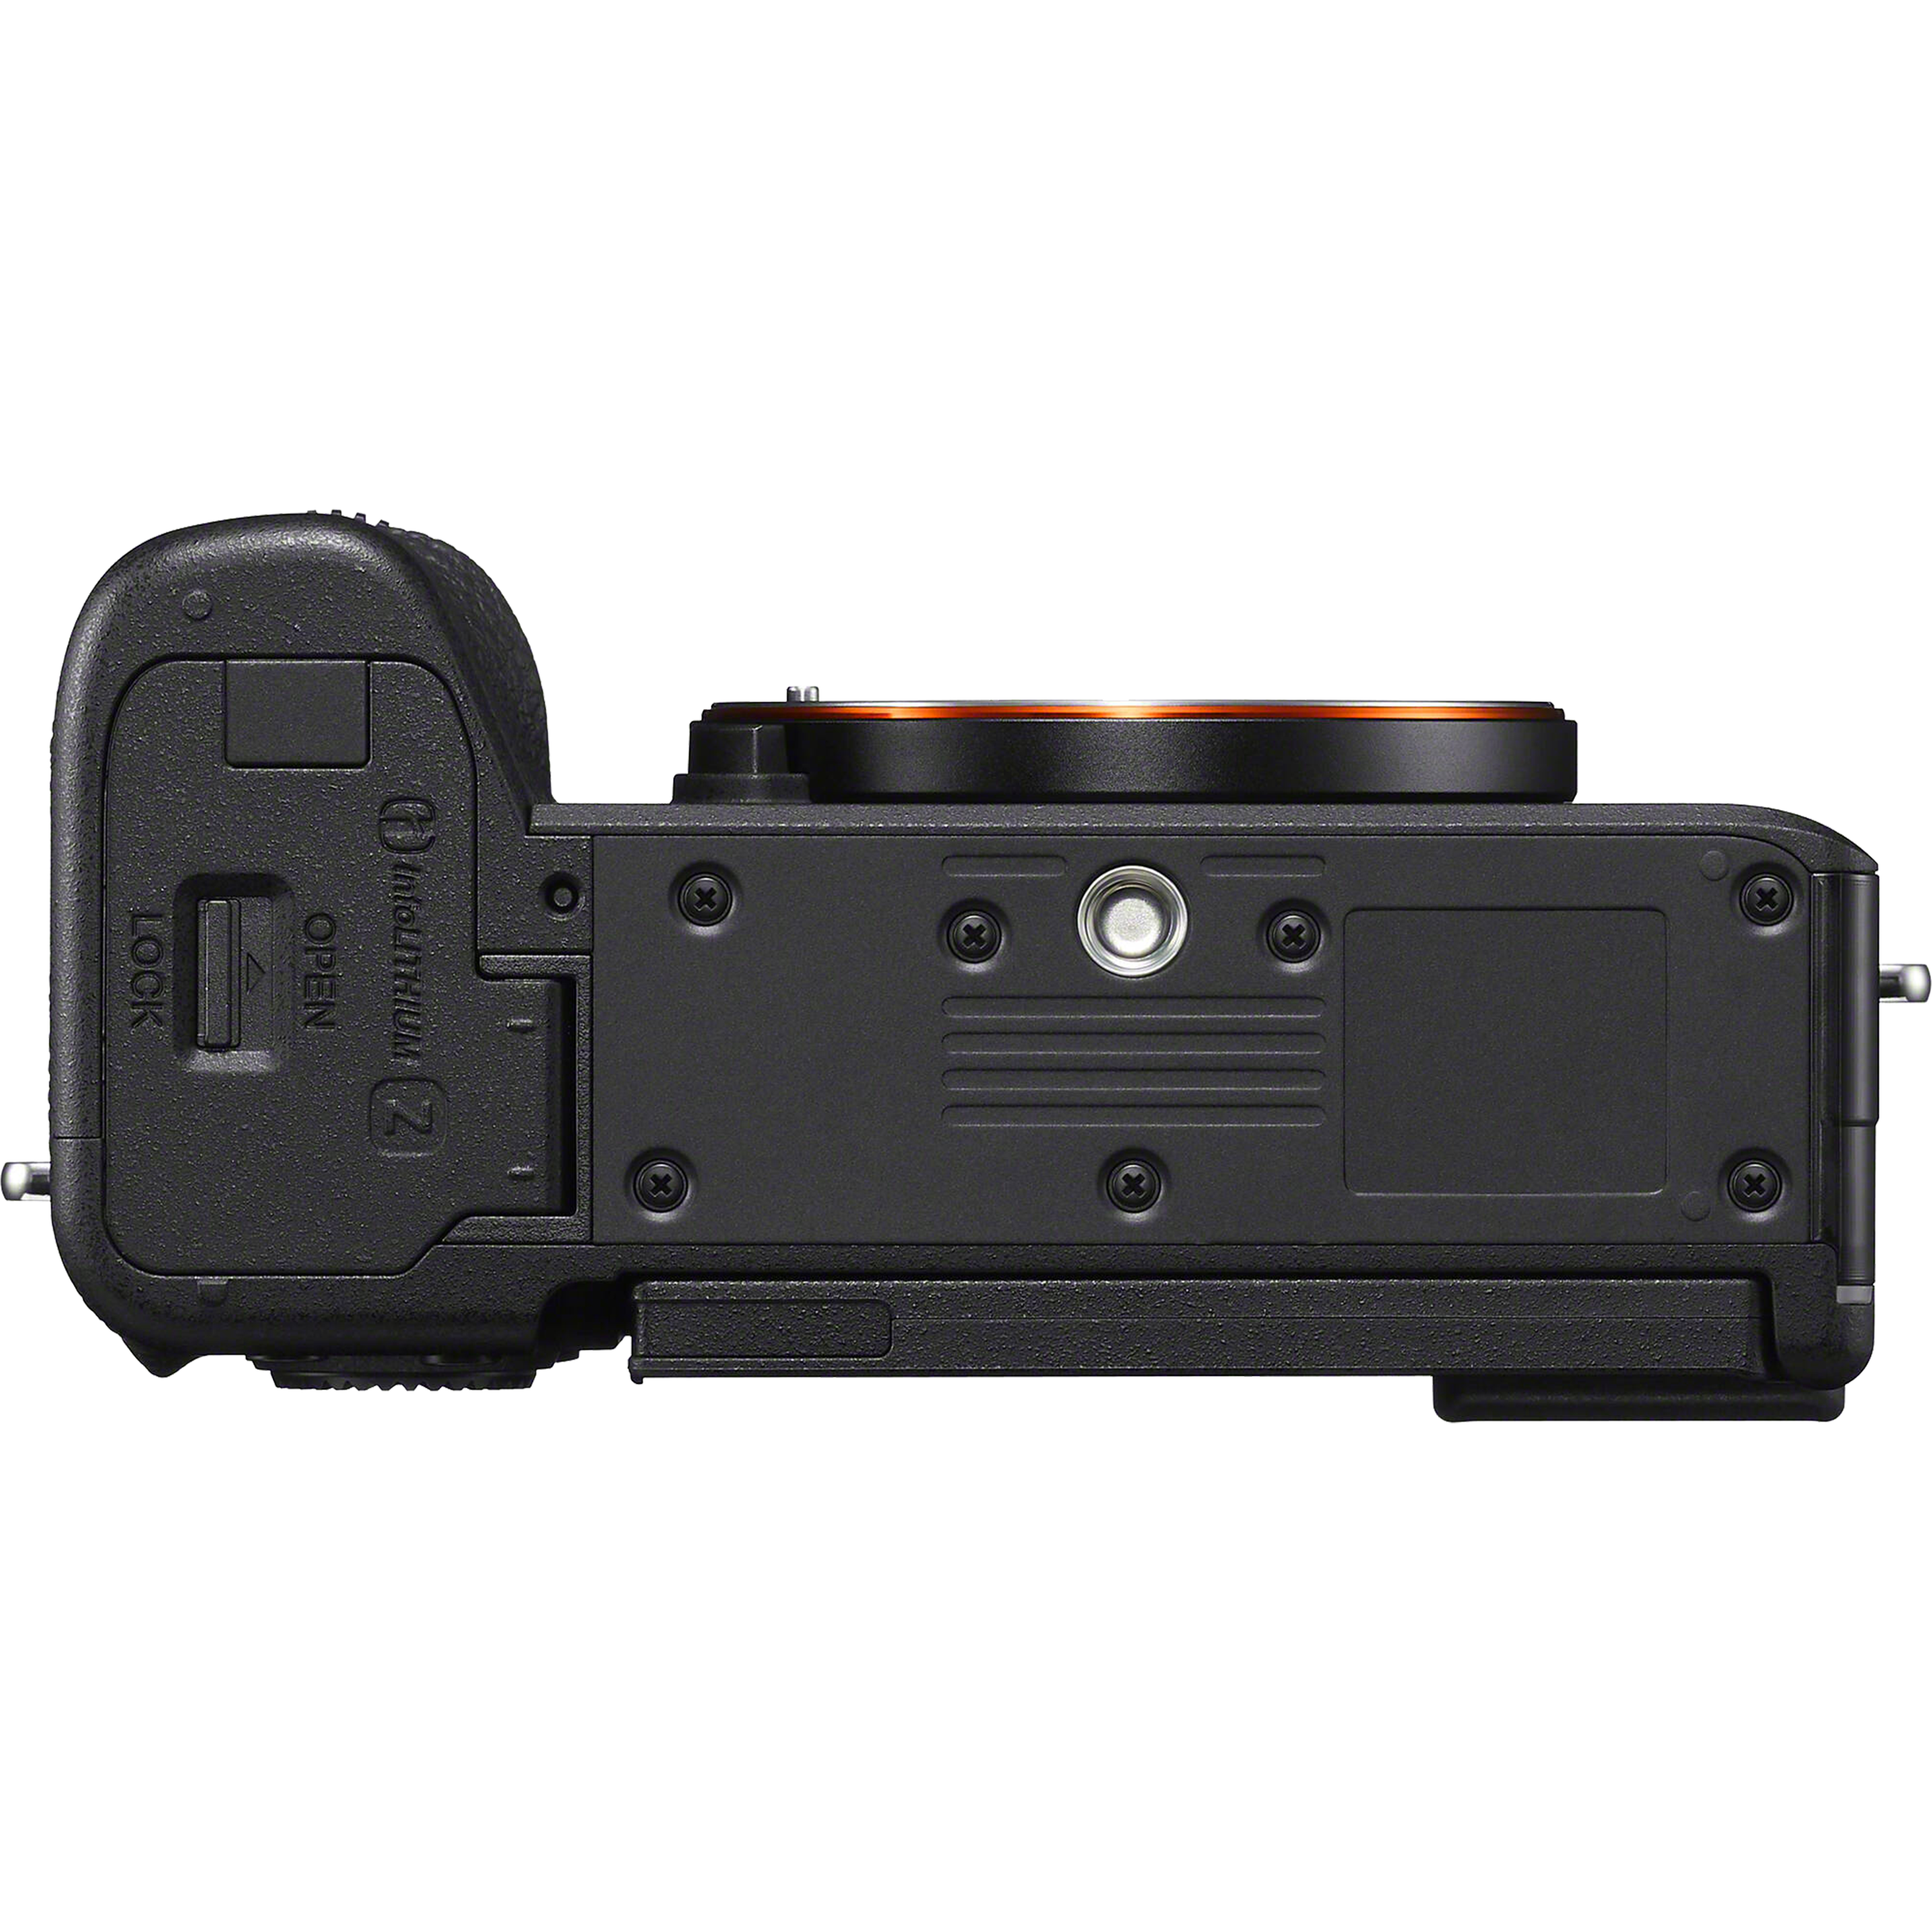 מצלמה דיגיטלית ללא מראה הכוללת עדשה Sony Alpha 7C II FE 28-60mm f/4-5.6 - צבע שחור שלוש שנות אחריות ע